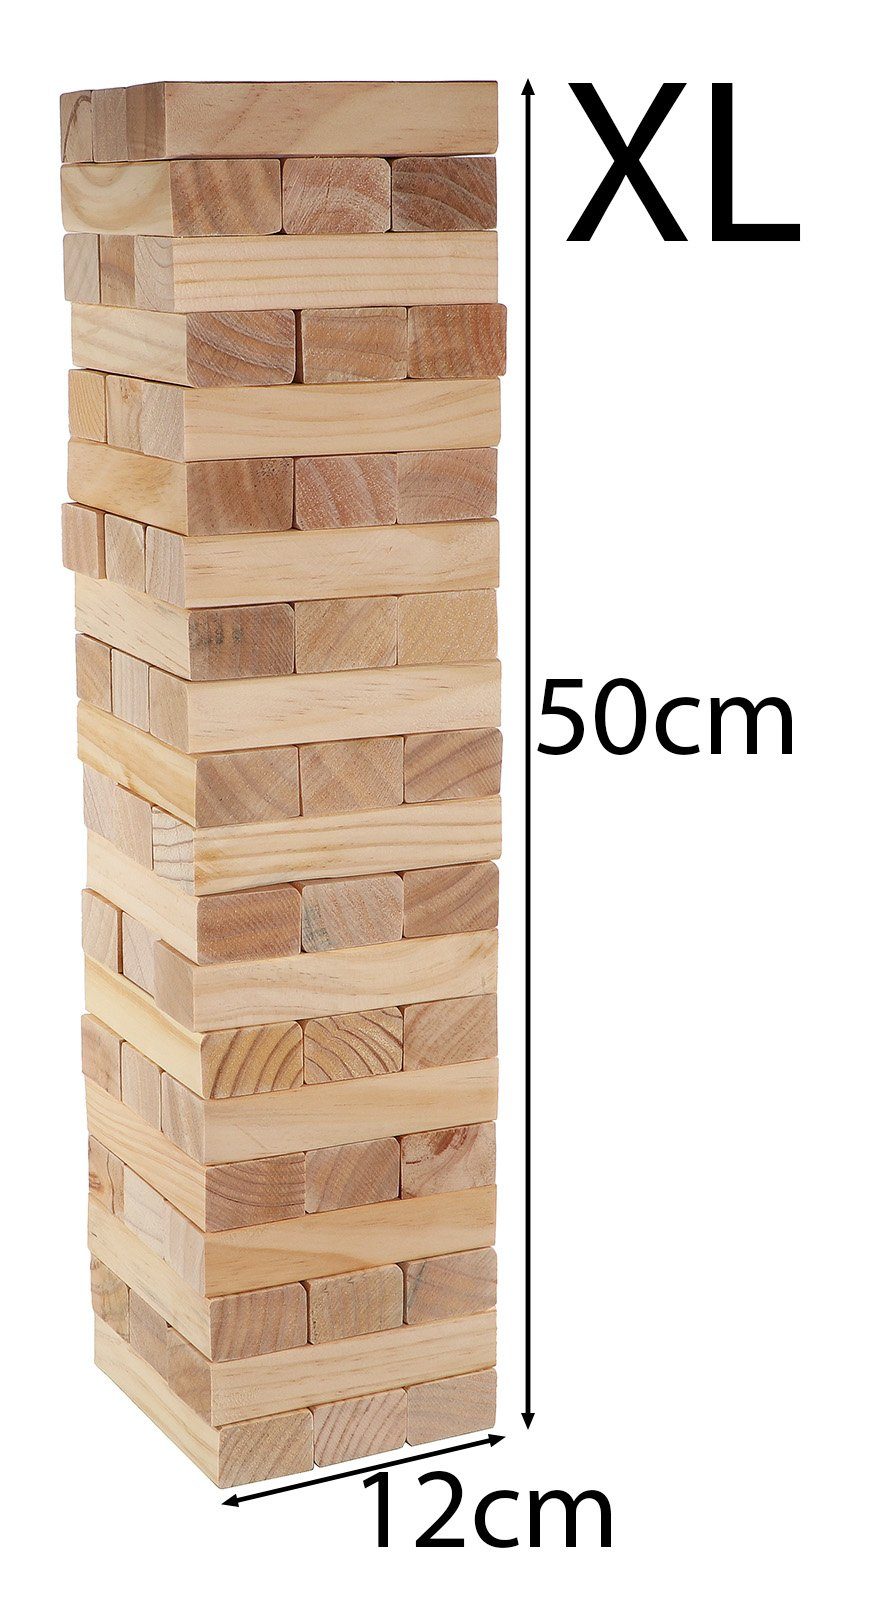 Alert Stapelspielzeug Holz Stapelturm XL Wackelturm 50cm hoch